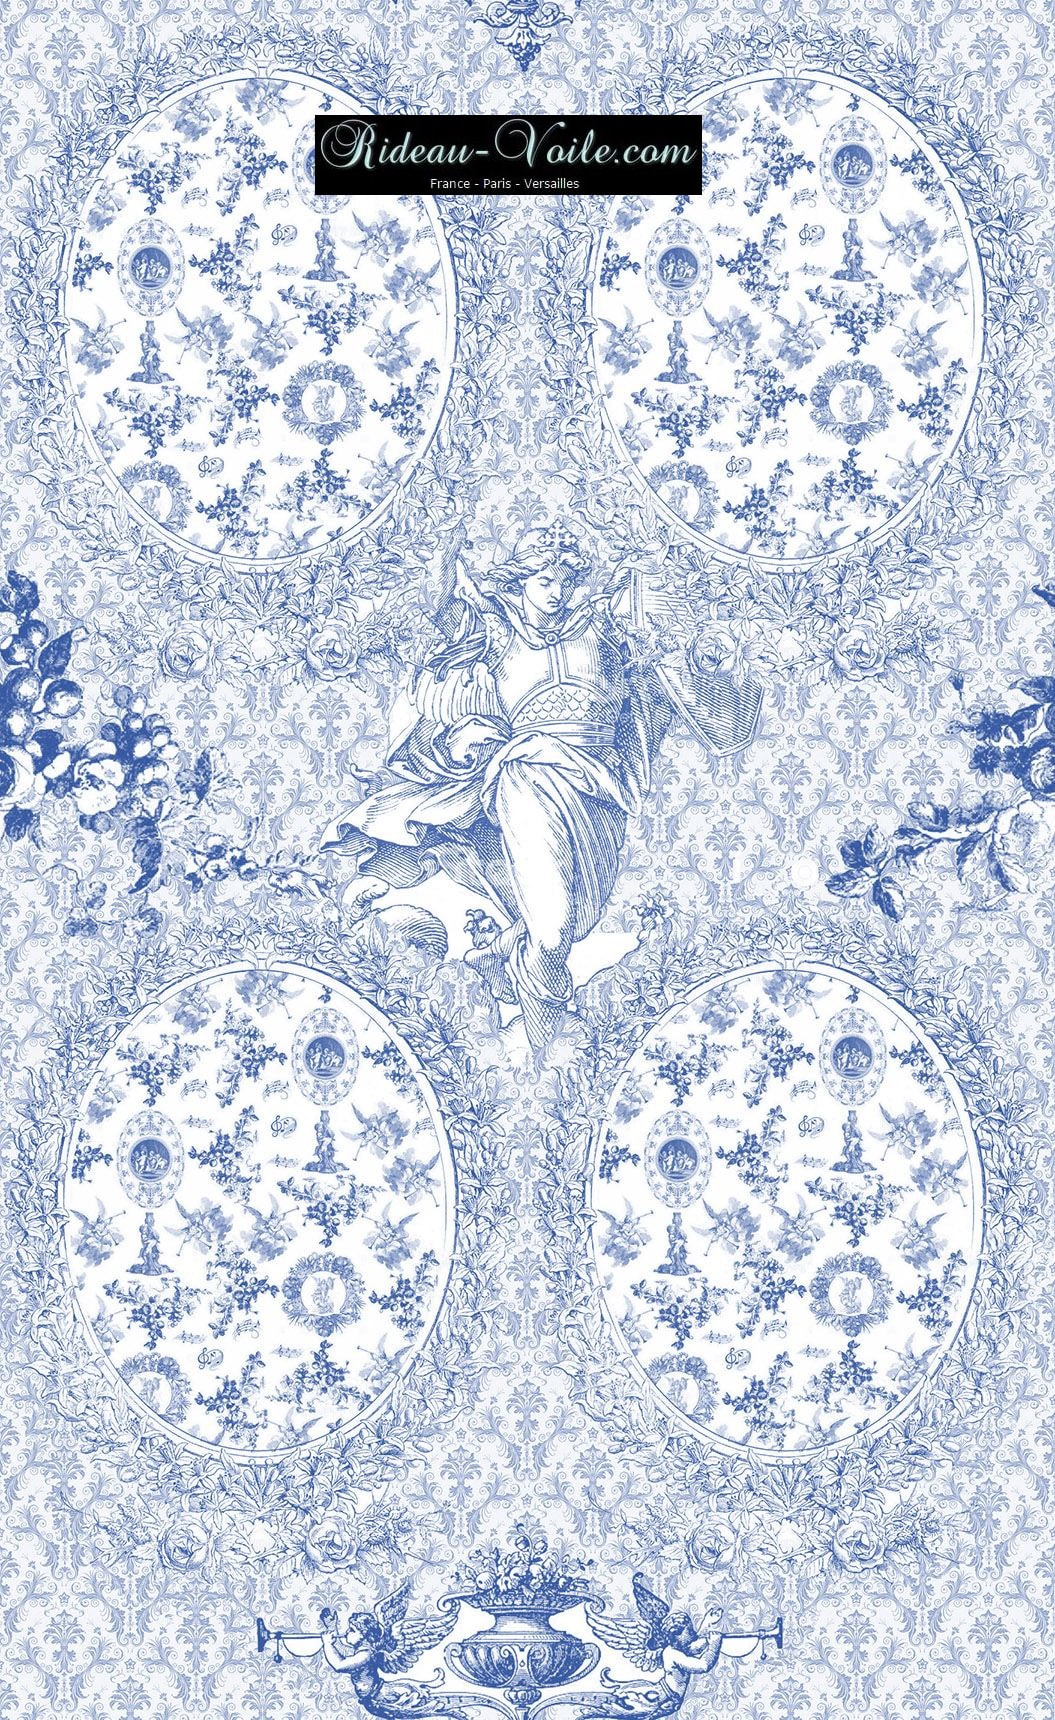 Toile de Jouy tissu ameublement motif imprimé décoration tapisserie au mètre confection sur mesure bleu clair